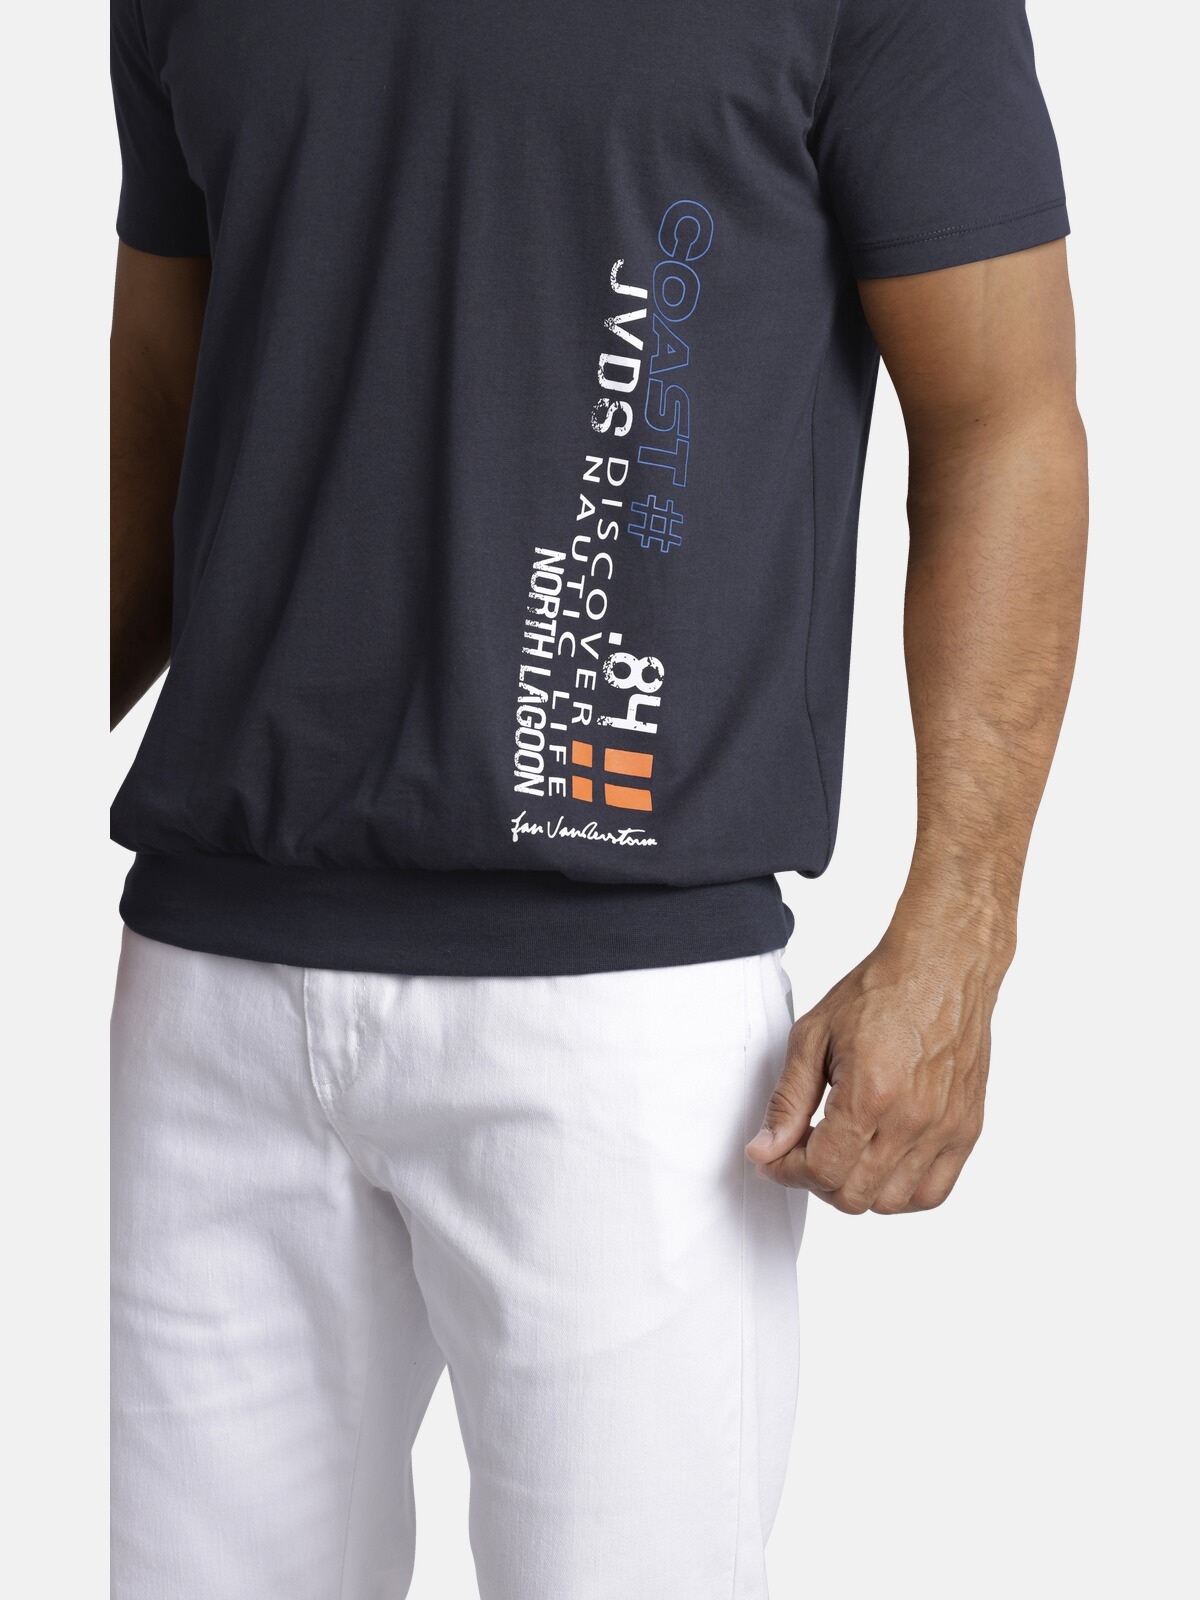 Jan Vanderstorm T-Shirt »T-Shirt GILBRECHT«